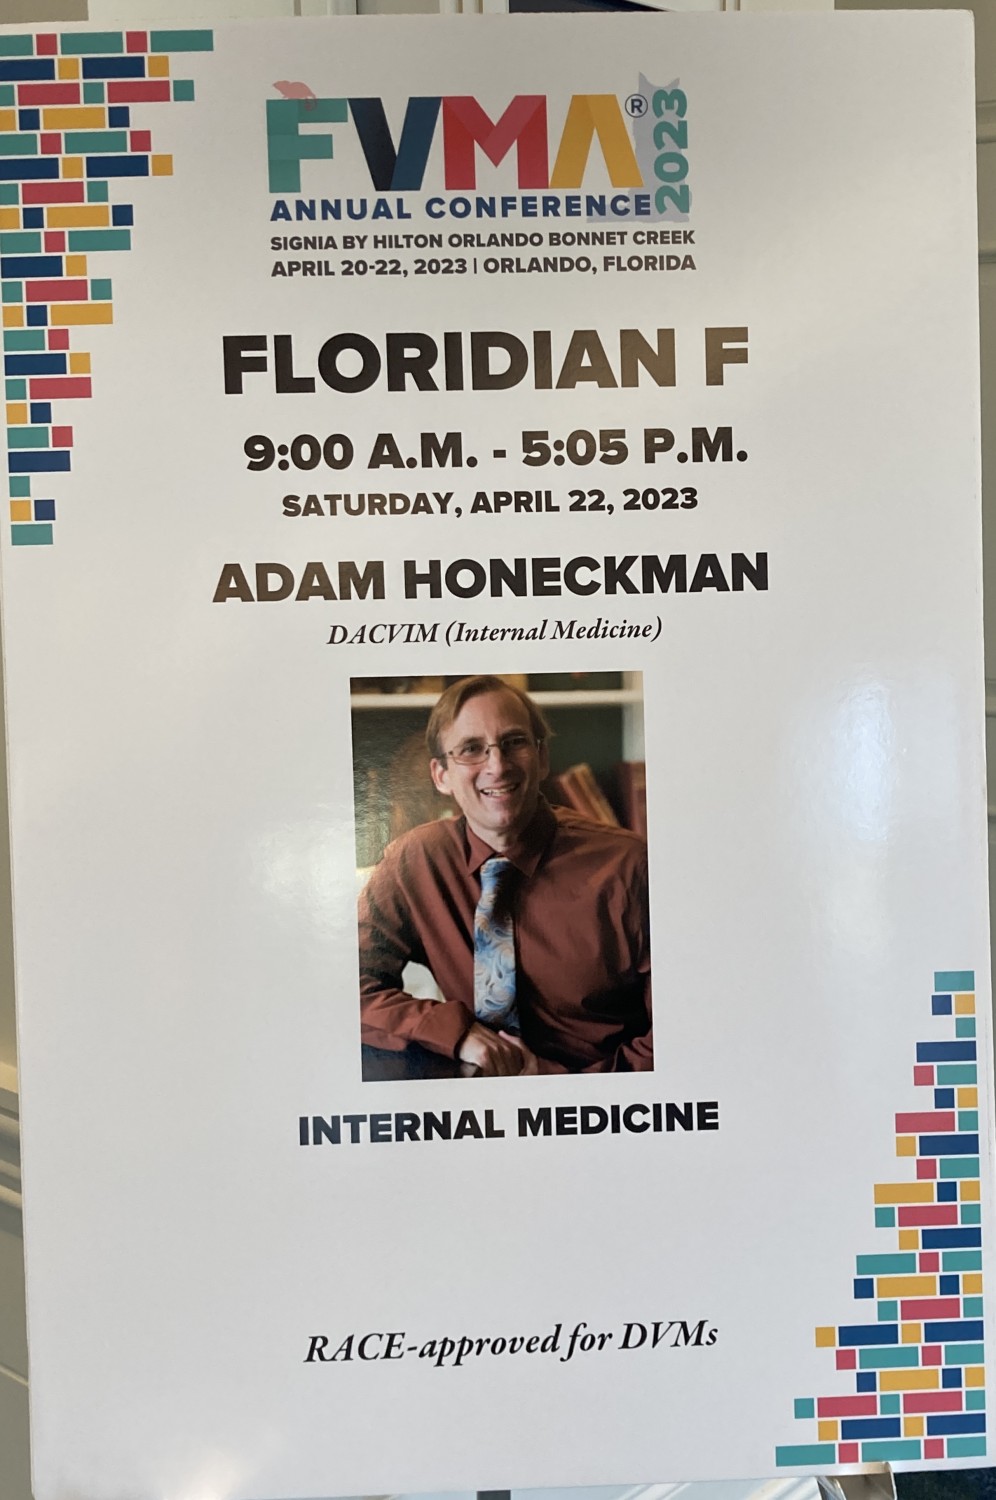 Dr. Adam Honeckman